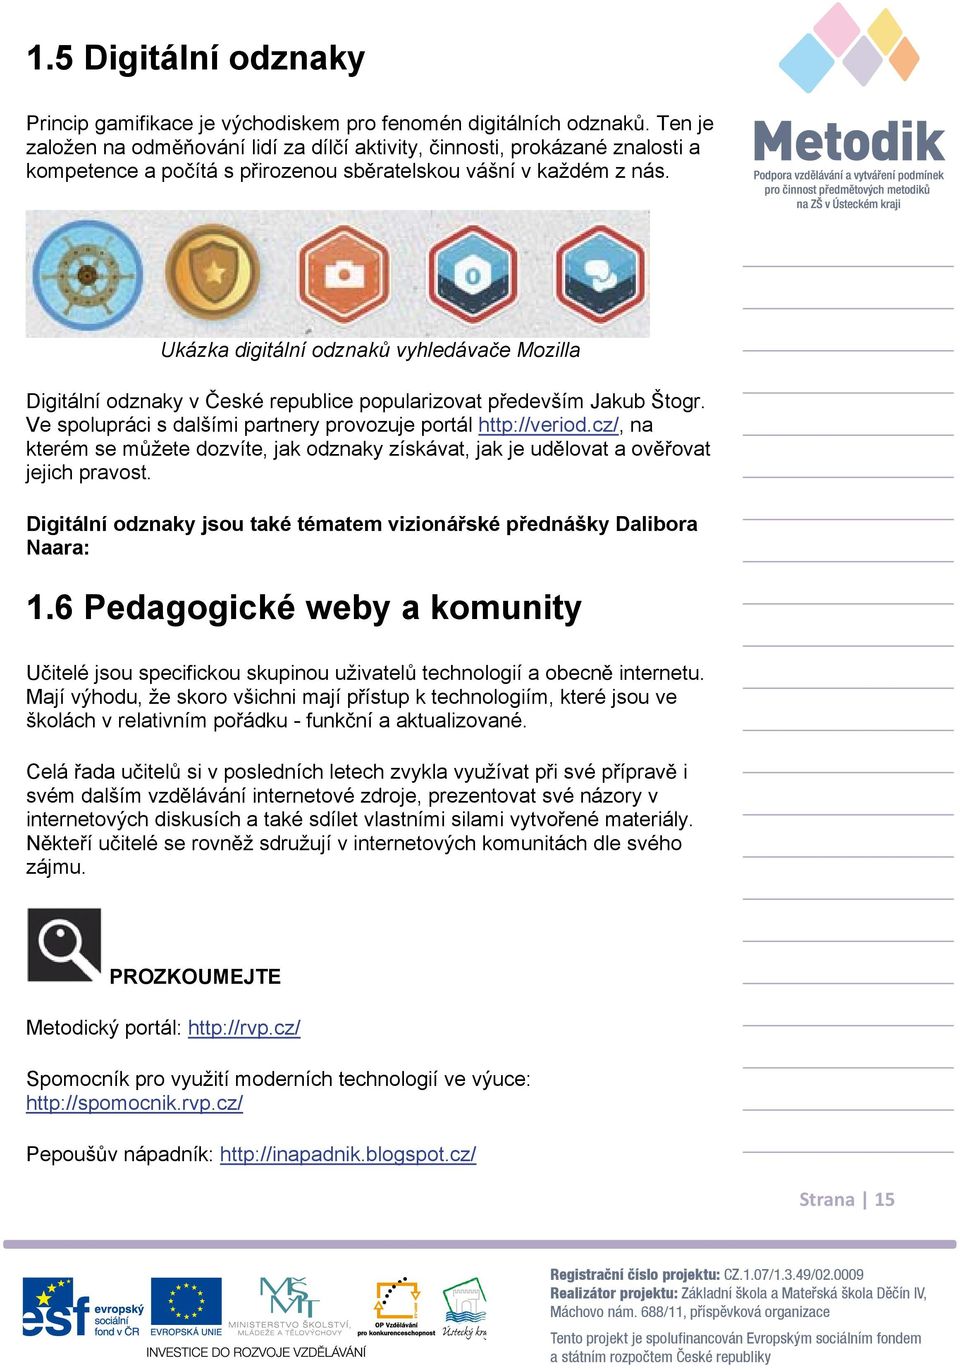 Ukázka digitální odznak vyhledáva e Mozilla Digitální odznaky v eské republice popularizovat p edevším Jakub Štogr. Ve spolupráci s dalšími partnery provozuje portál http://veriod.